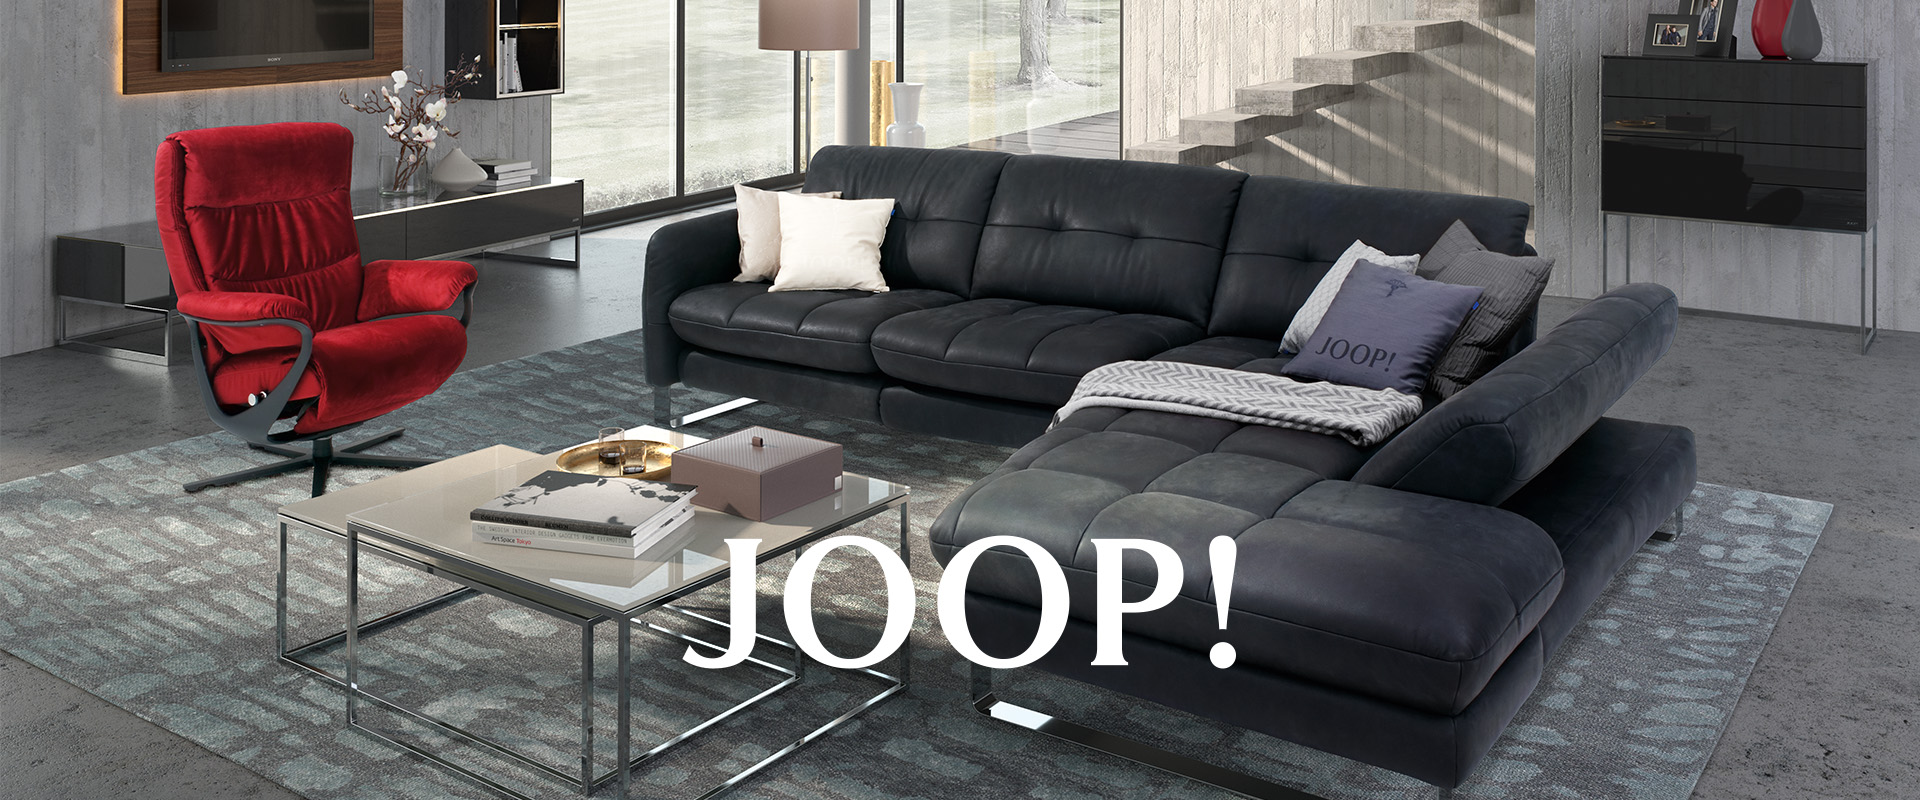 JOOP! kreiert hochwertige Design-Möbel für Bad, Schlafzimmer und Wohnzimmer.